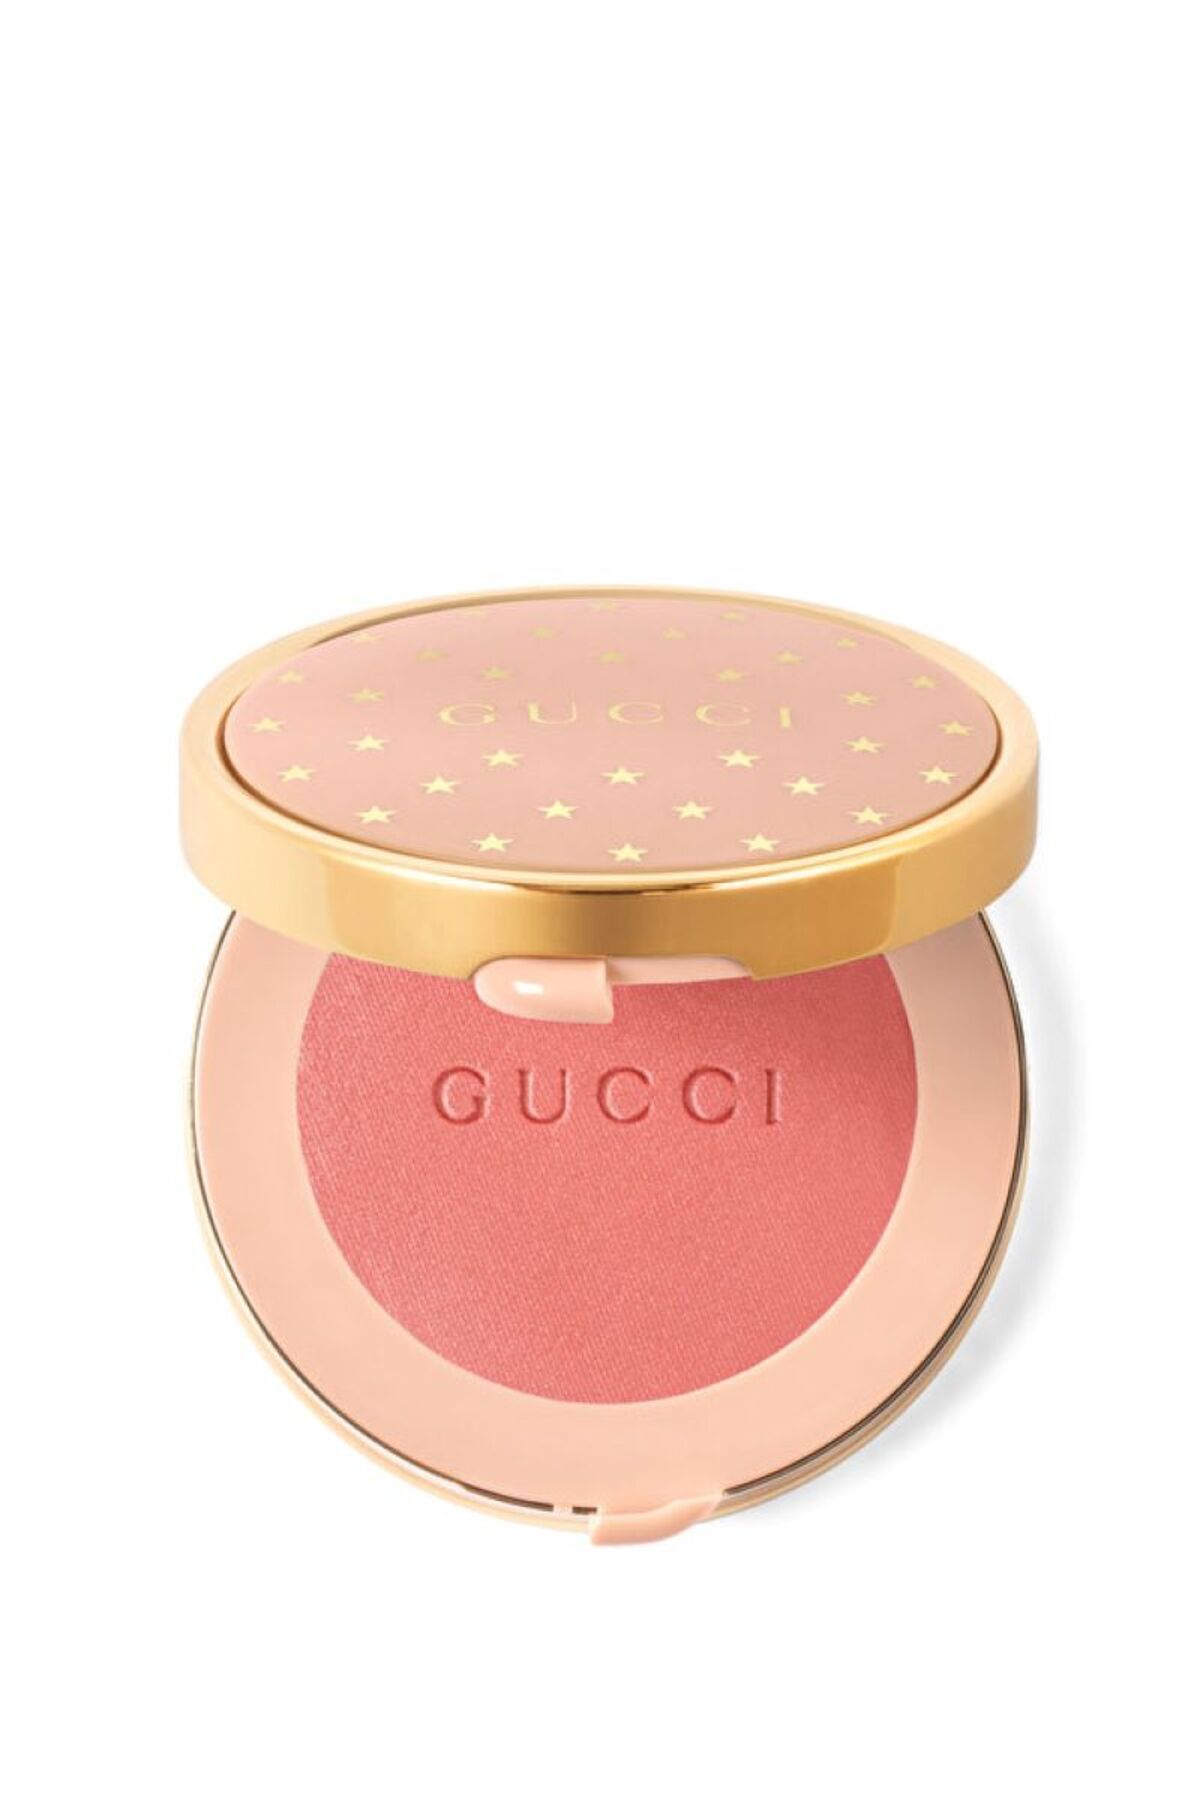 Gucci Beauty Blush Pürüzsüz, Eğlenceli ve Çok amaçlı, Yanaklara ve Gözlere Uygulanabilir 5,5 gr